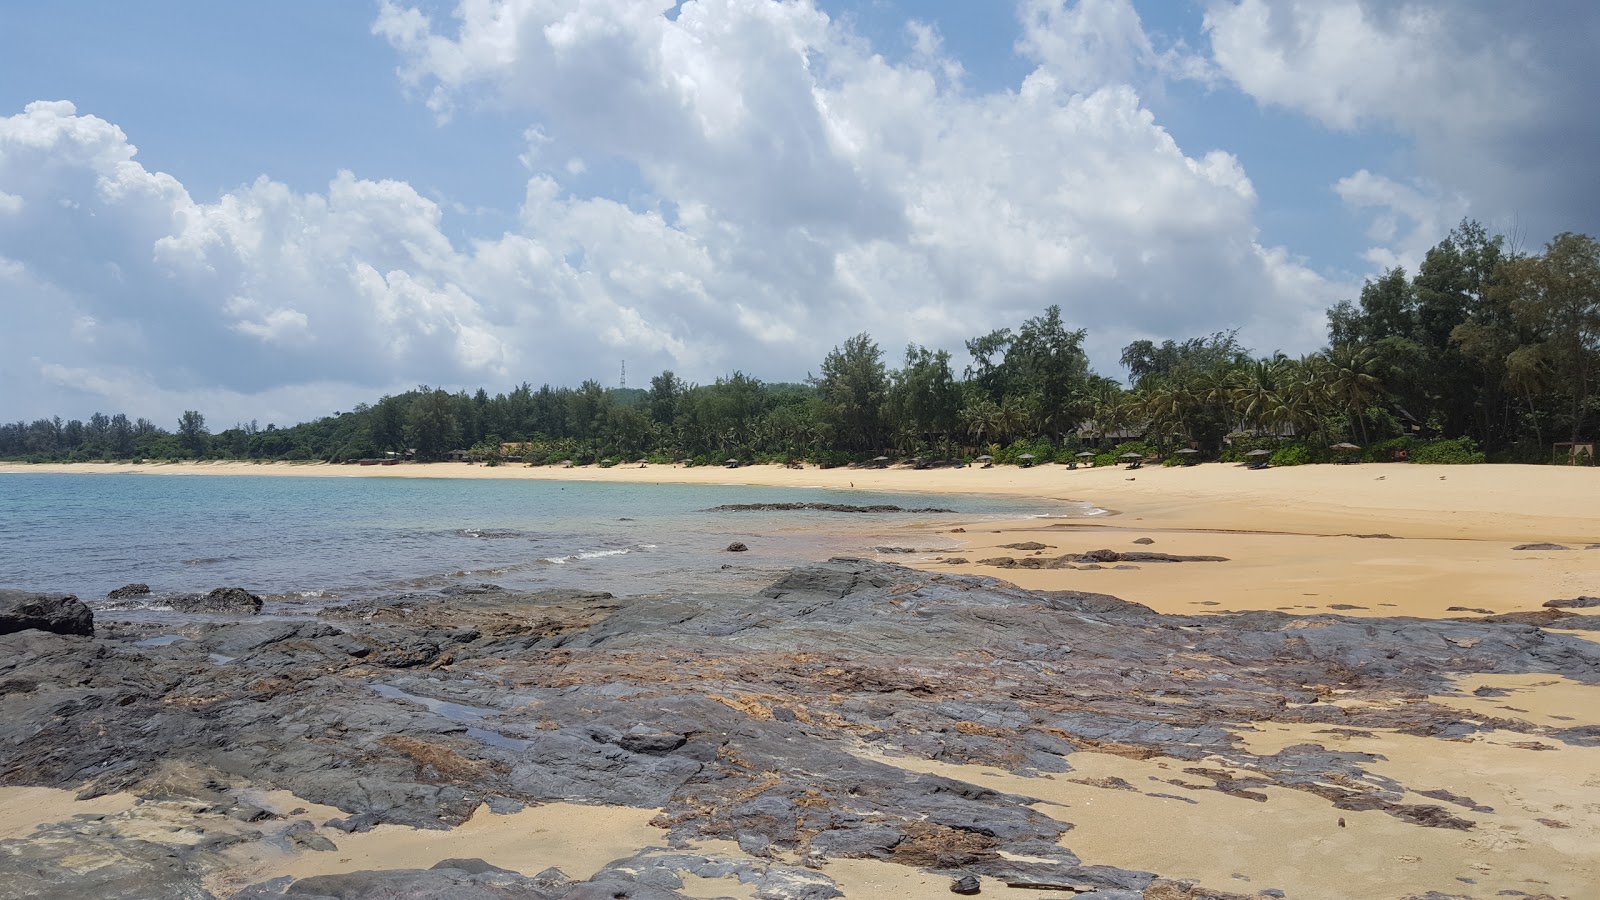 Tanjung Jara Beach'in fotoğrafı geniş plaj ile birlikte